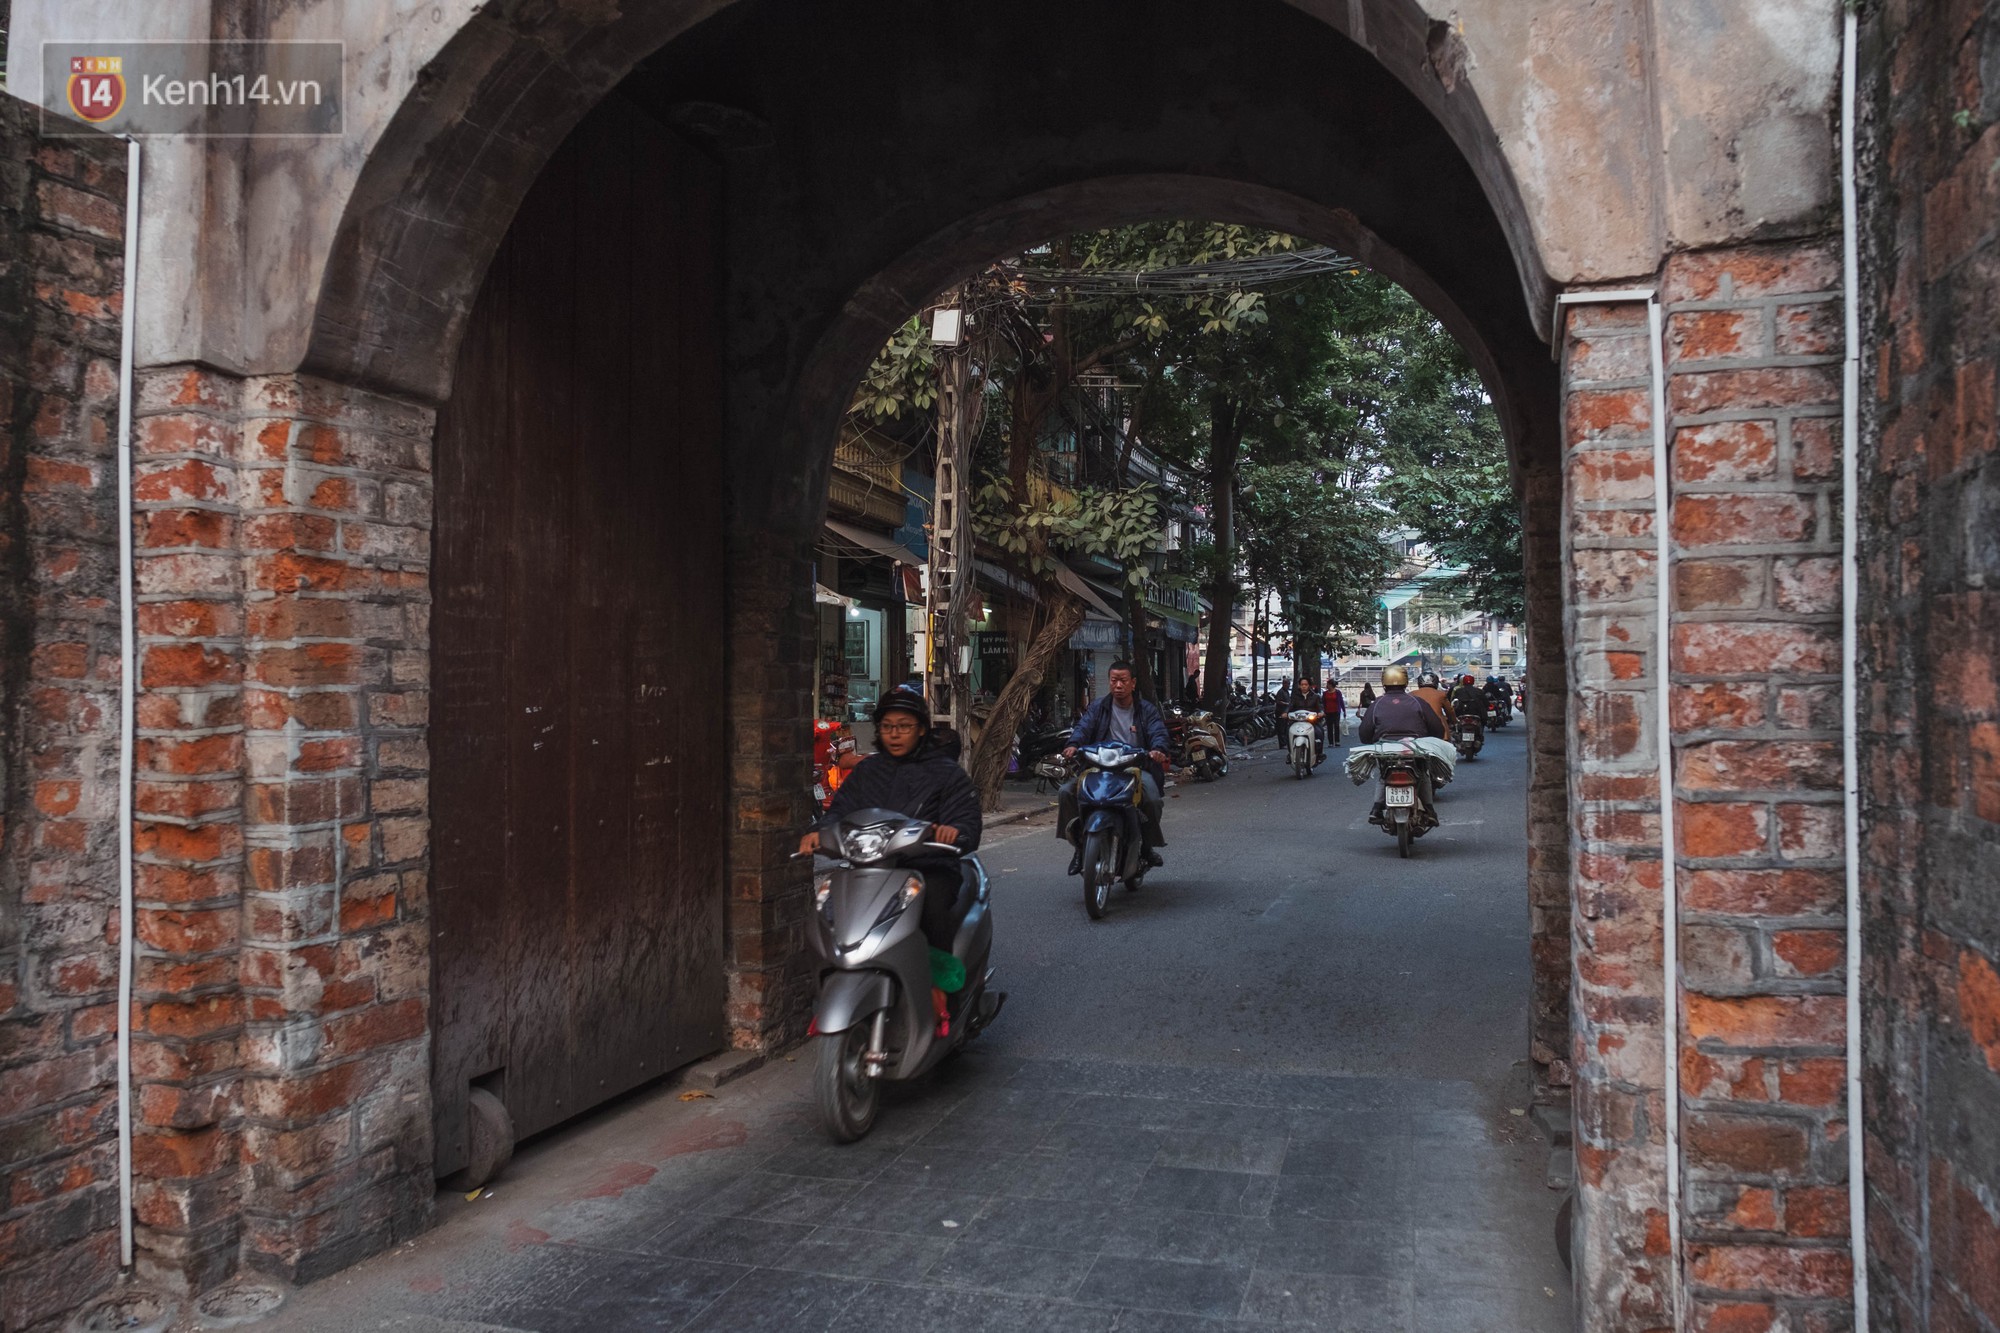 Chuyện người đàn ông ở Hà Nội 20 năm canh giữ cửa ô duy nhất còn lại của kinh thành Thăng Long xưa - Ảnh 5.